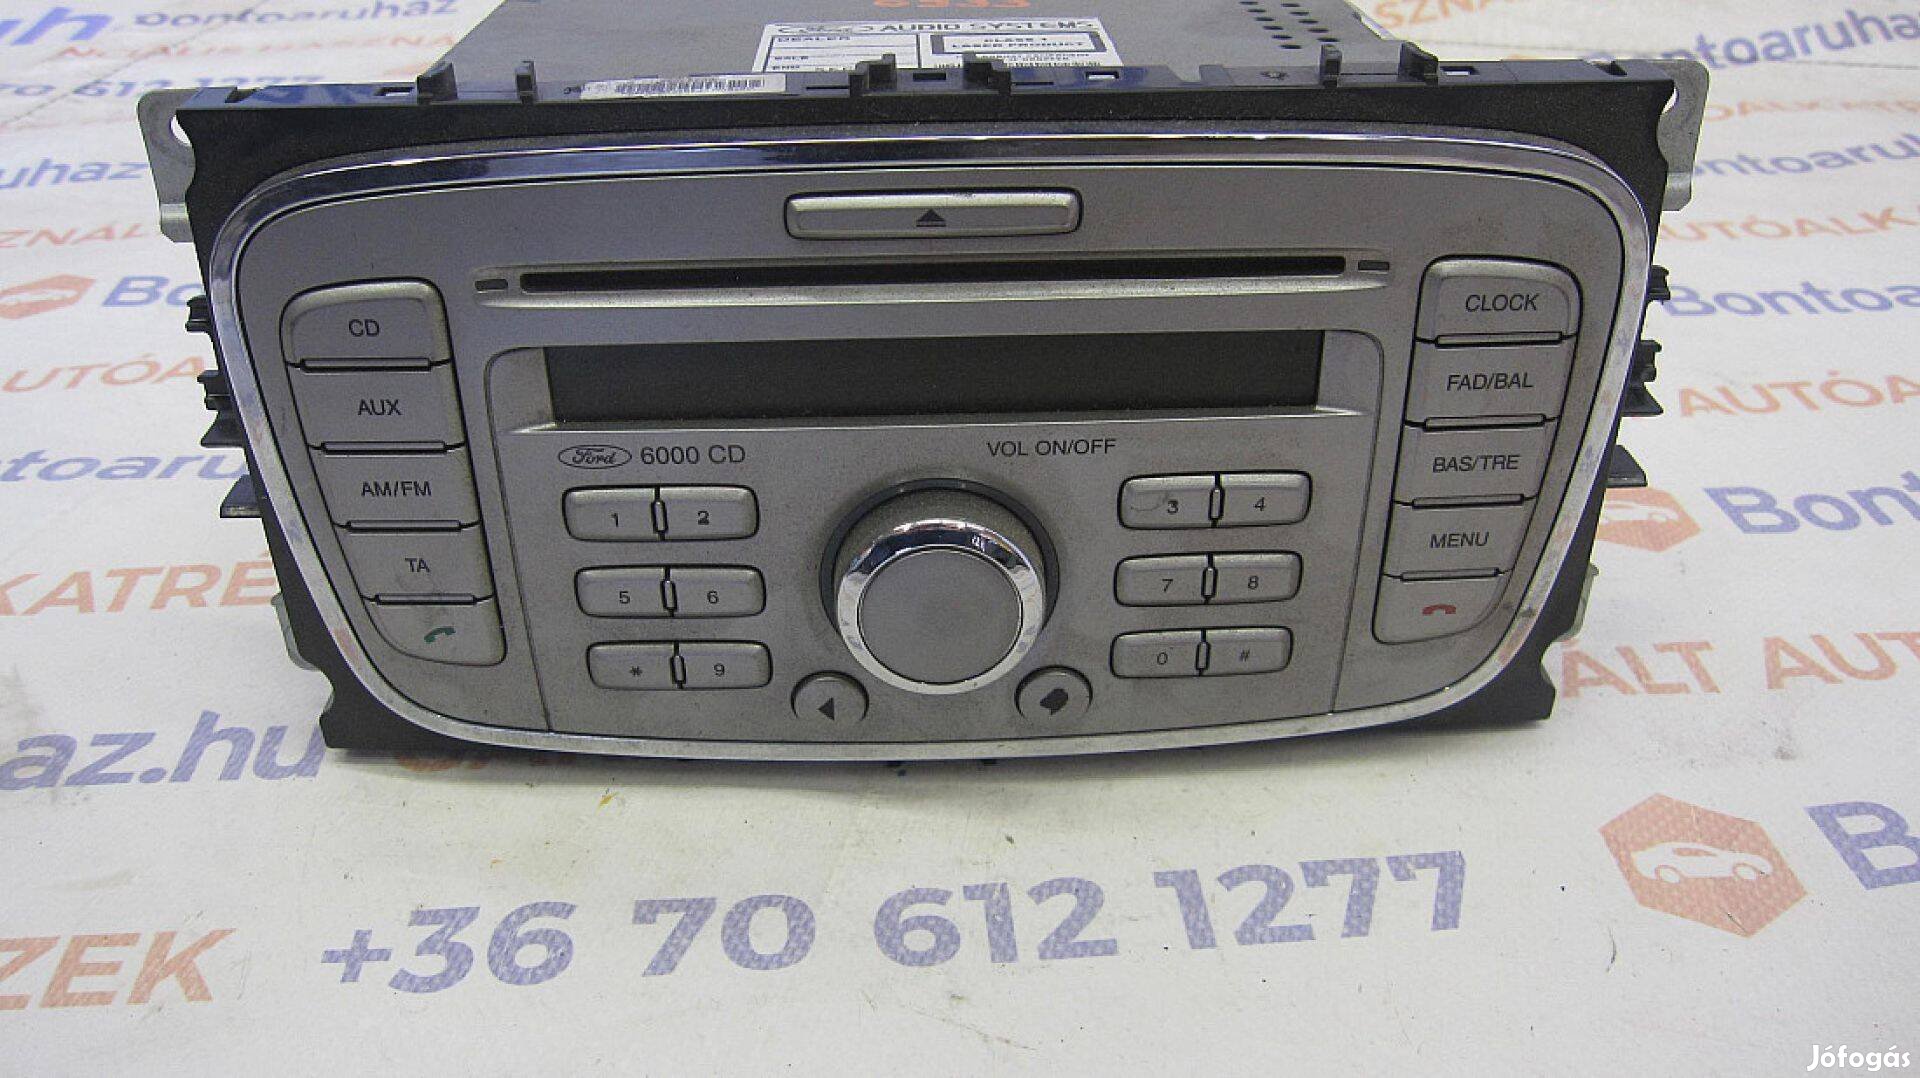 Ford Mondeo MK4 Eladó , 6000 CD rádíó fejegység kóddal